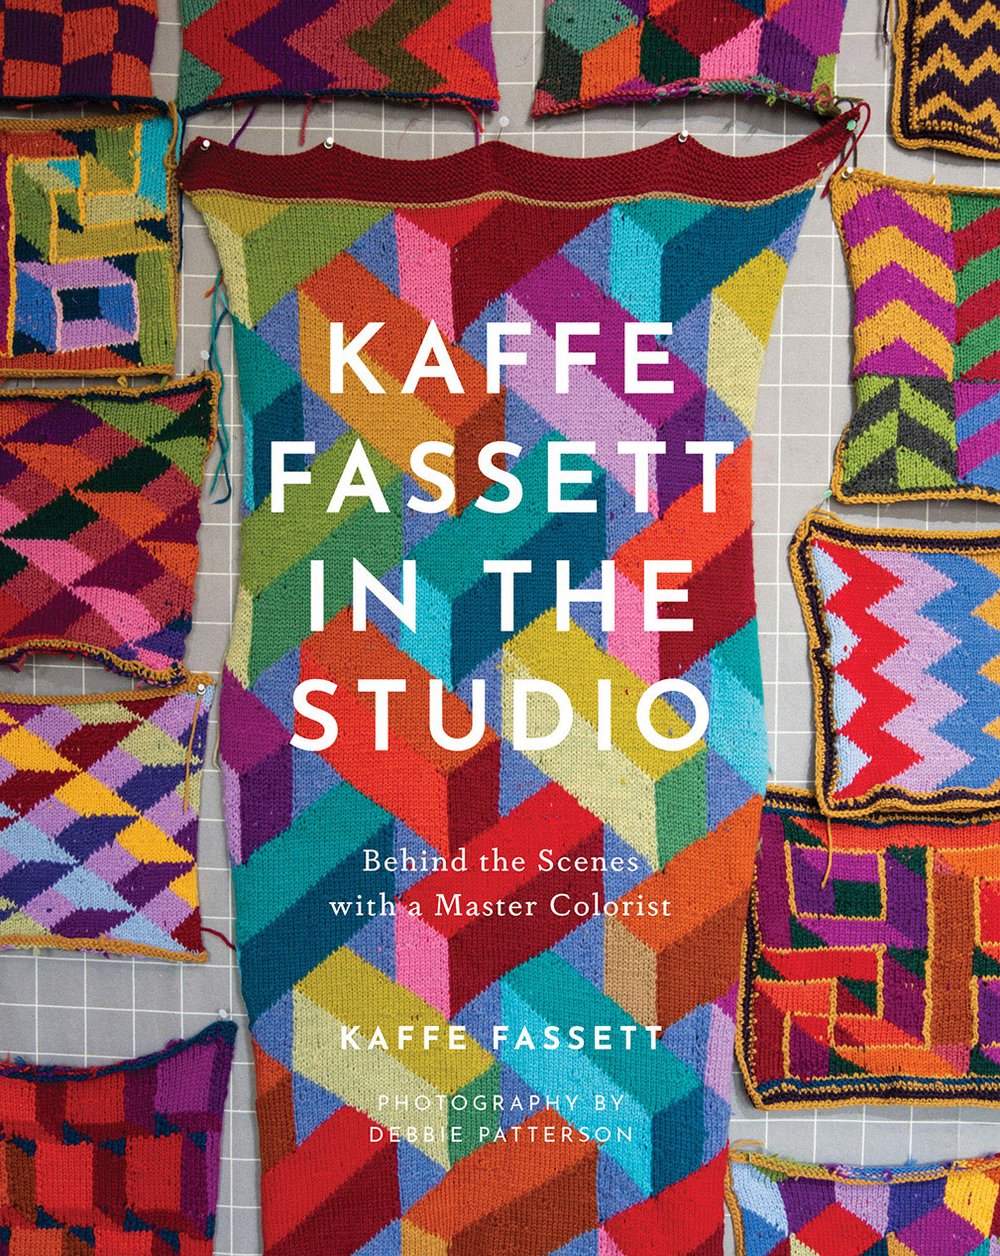 Kaffe Fassett's Quilts In An English Village